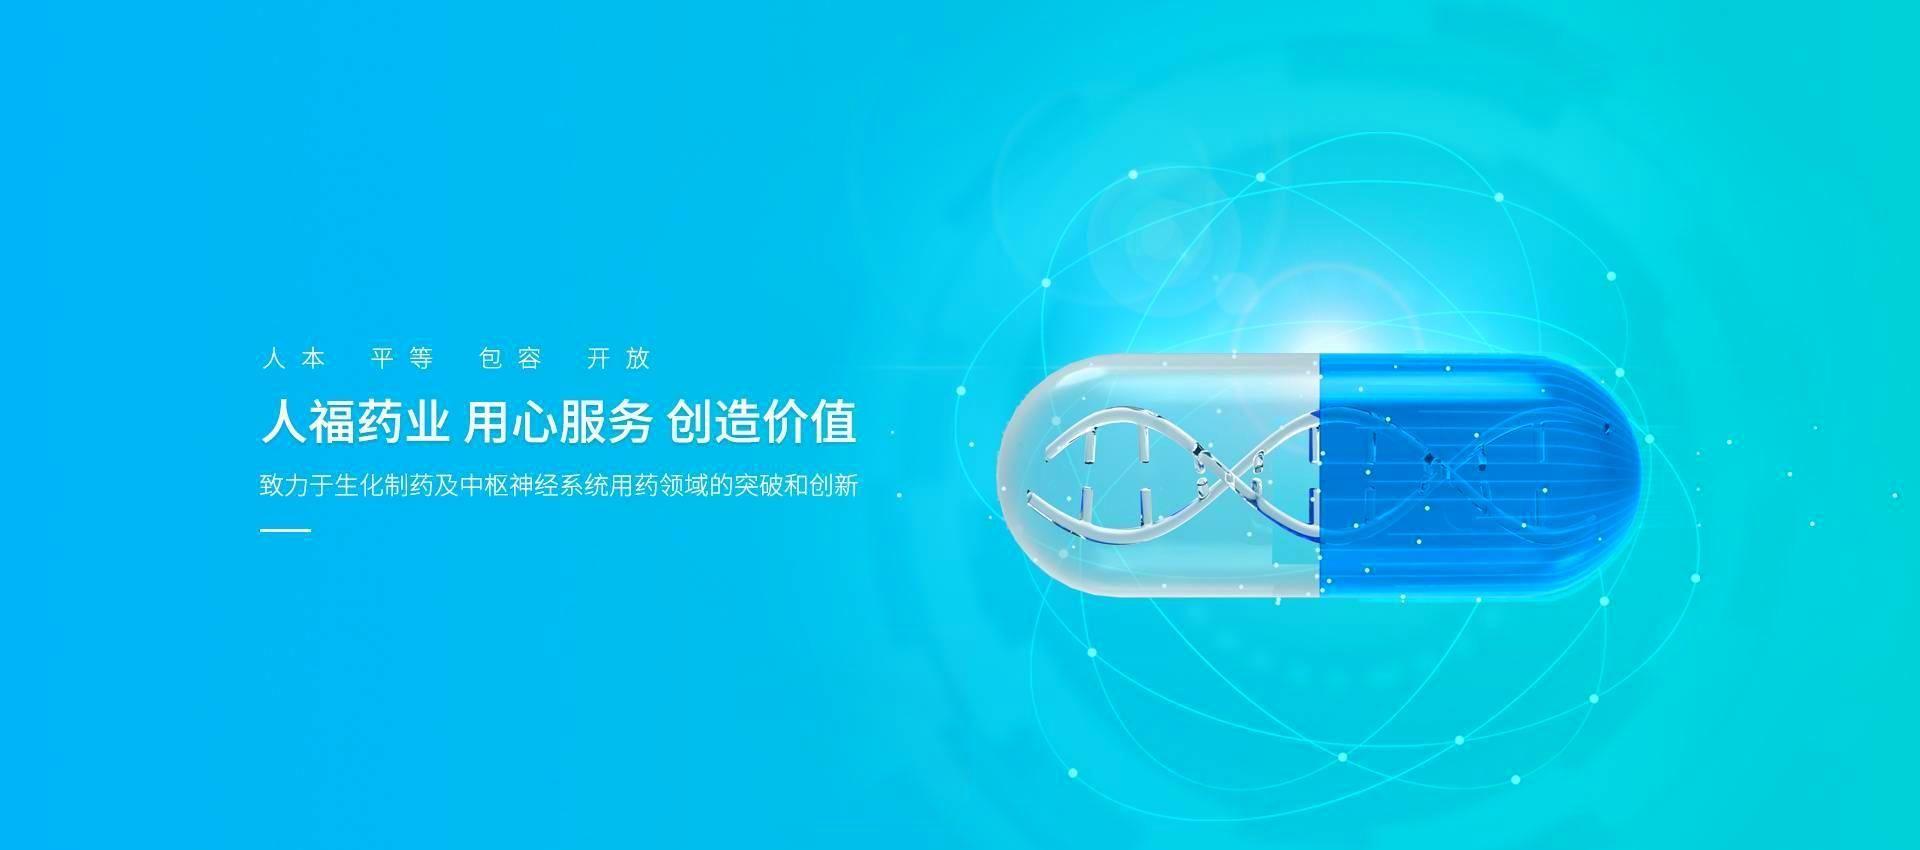 武汉CQ9电子药业有限责任公司